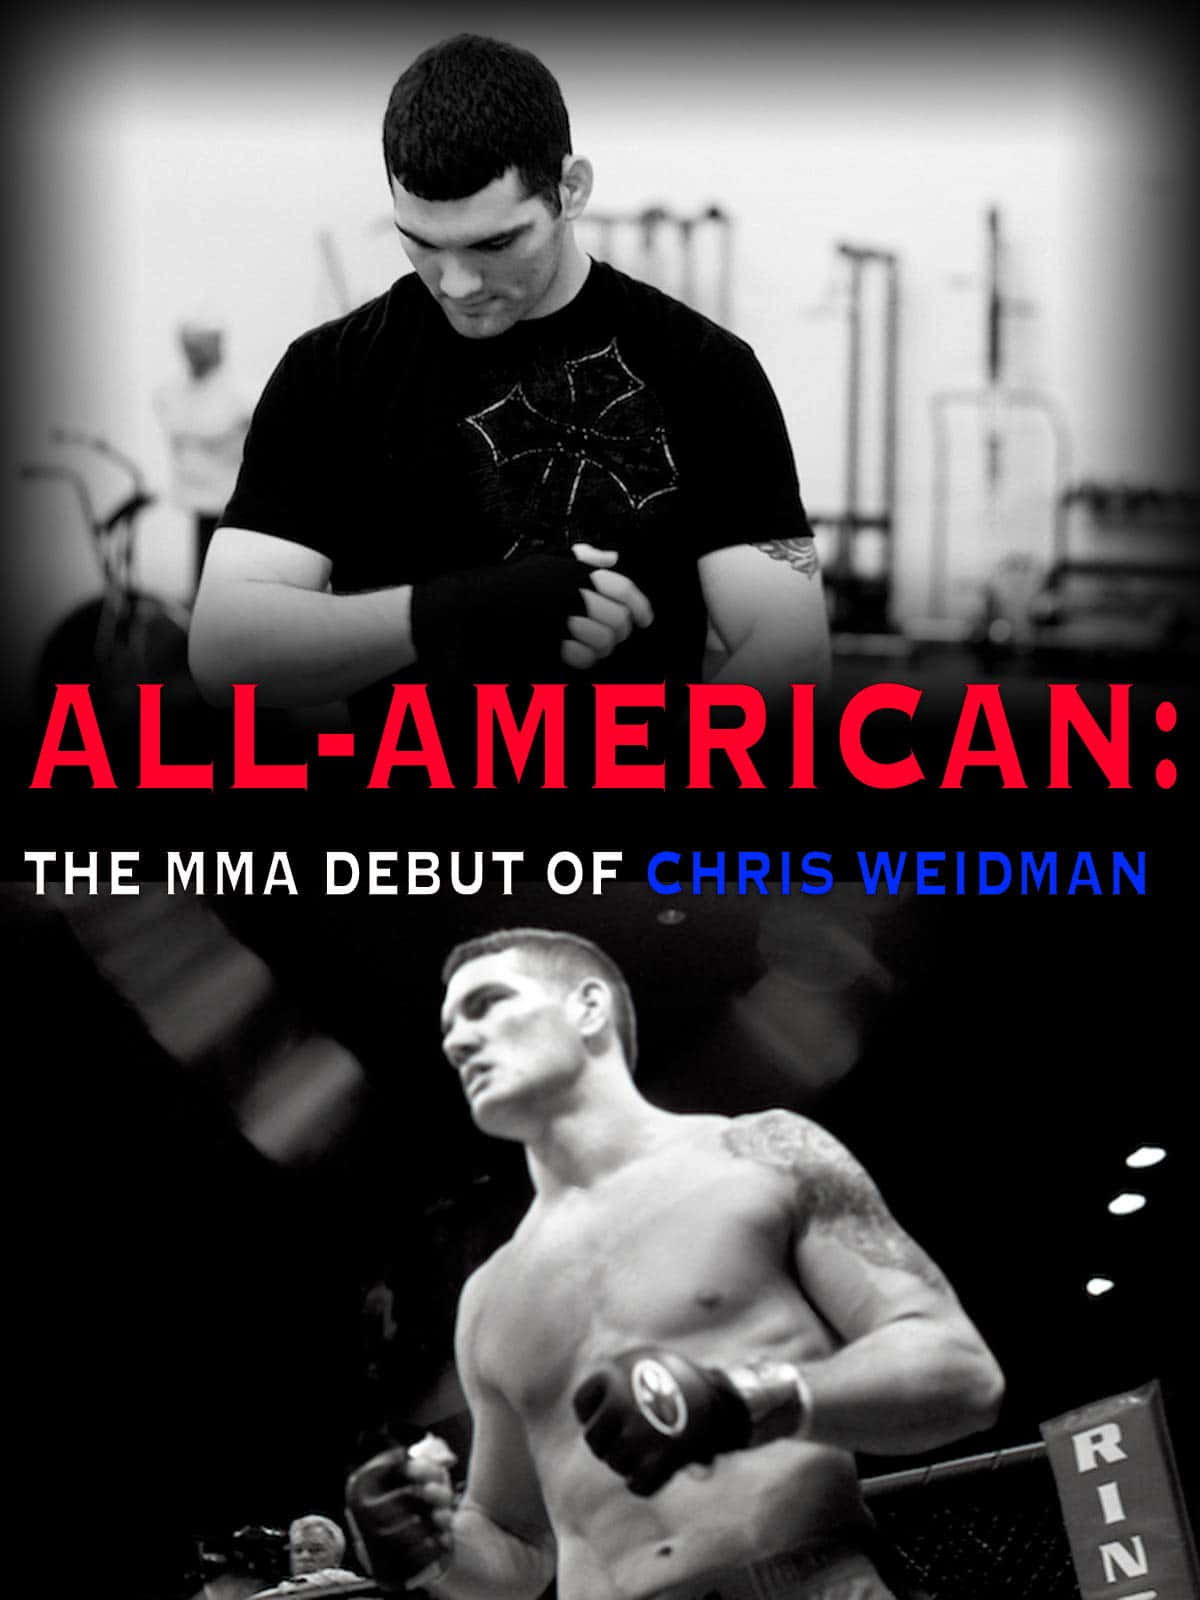 Tapet af Chris Weidman MMA debut: Se den legendariske UFC-mester Chris Weidman sin MMA-debut med dette fantastiske tapet! Wallpaper